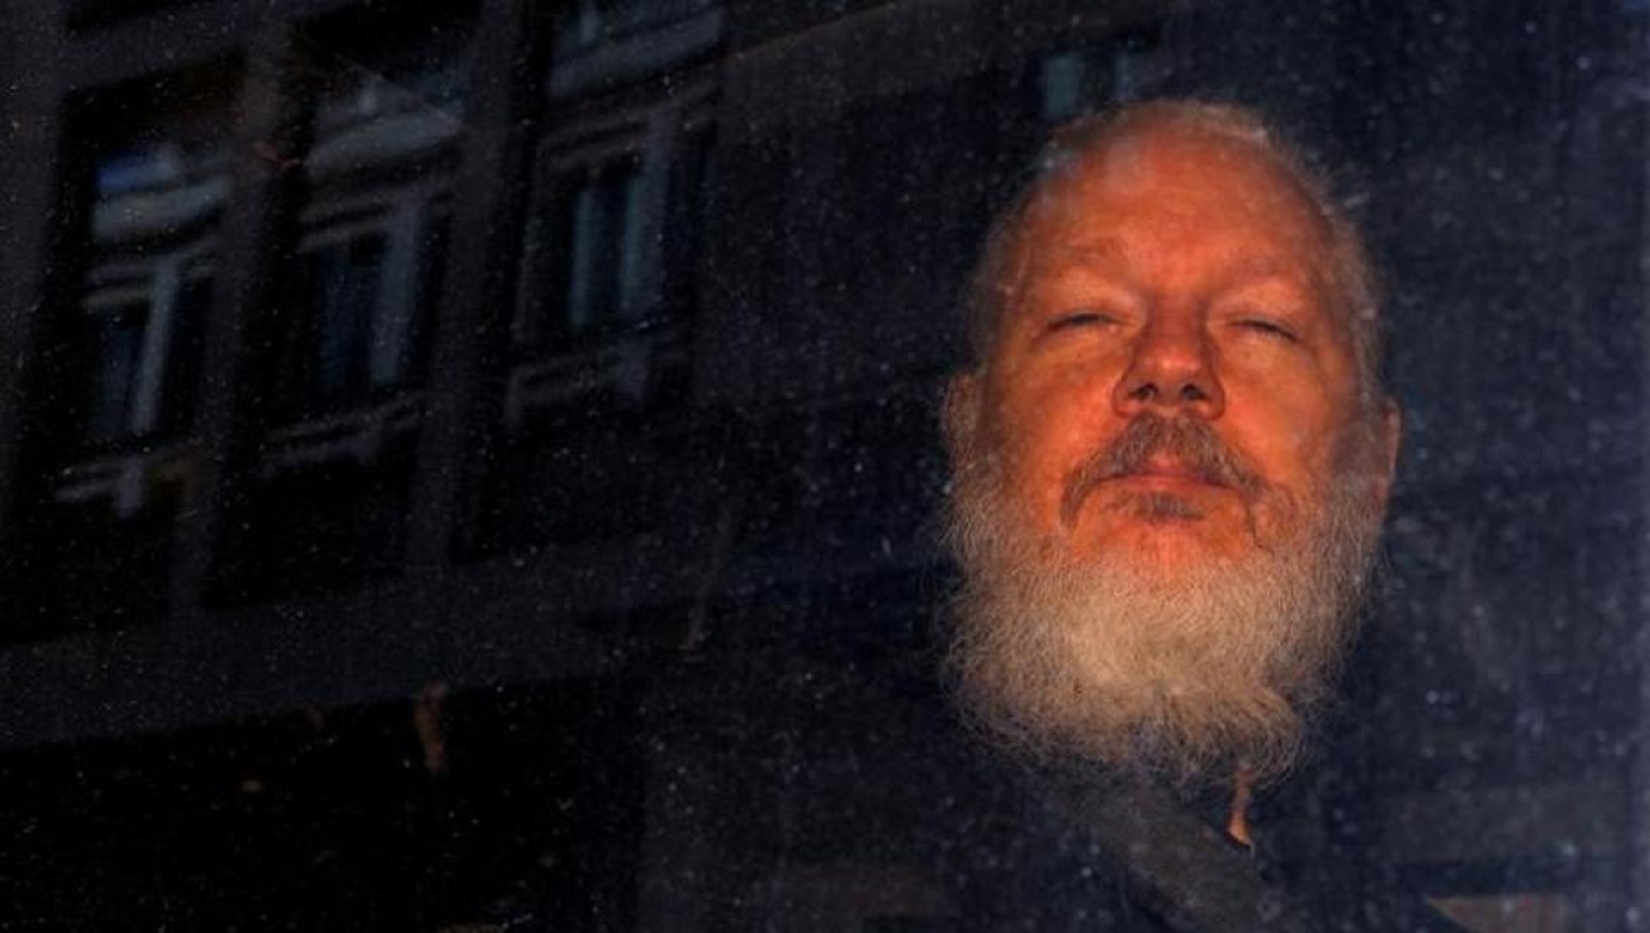 assange wikileaks